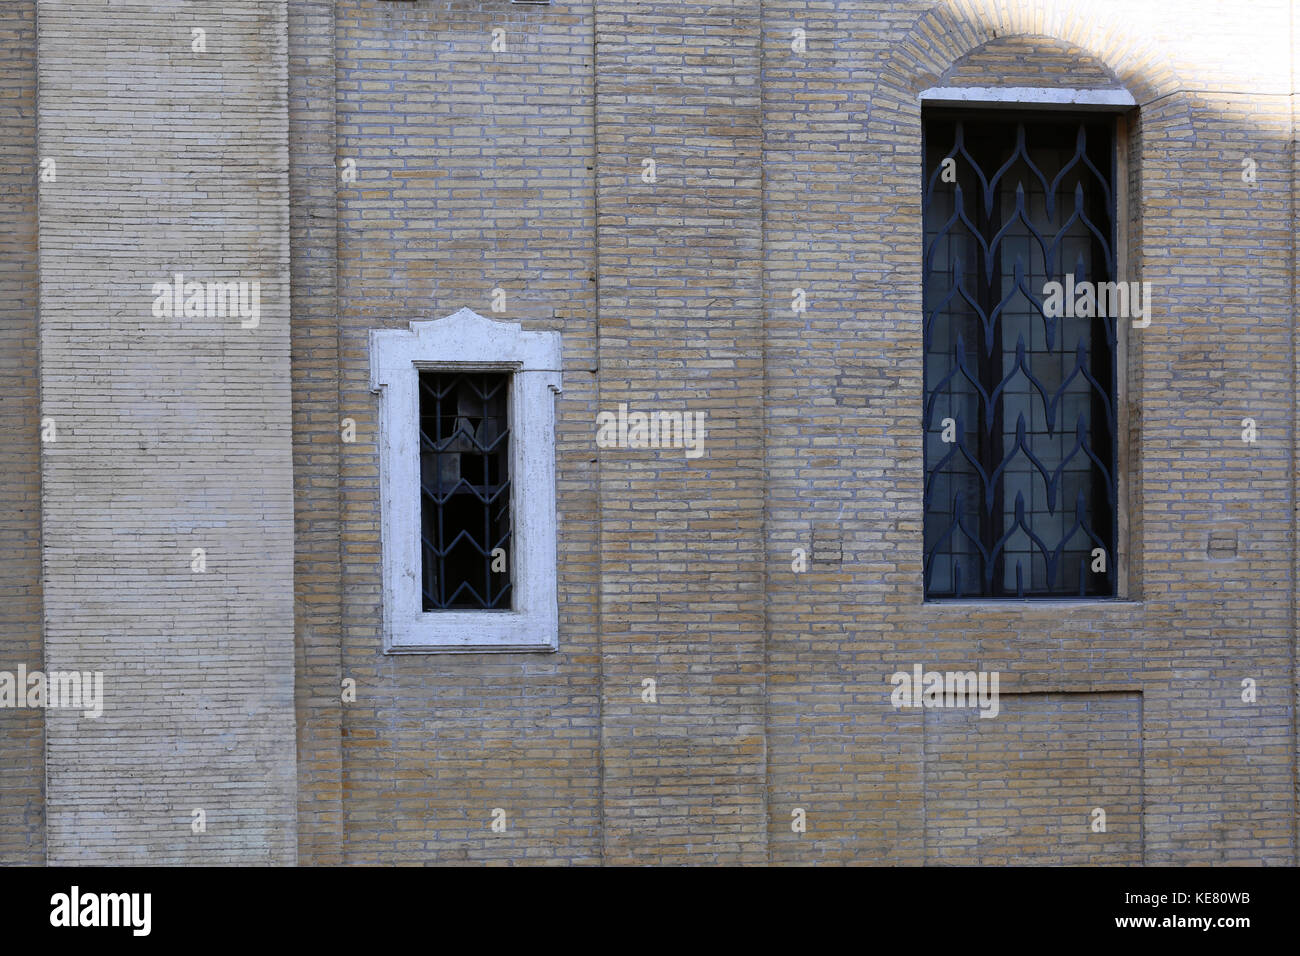 Zwei verschieden grosse Fenster in eine Wand gesetzt von sehr kleinen Steine einer hellen Farbe. Stockfoto